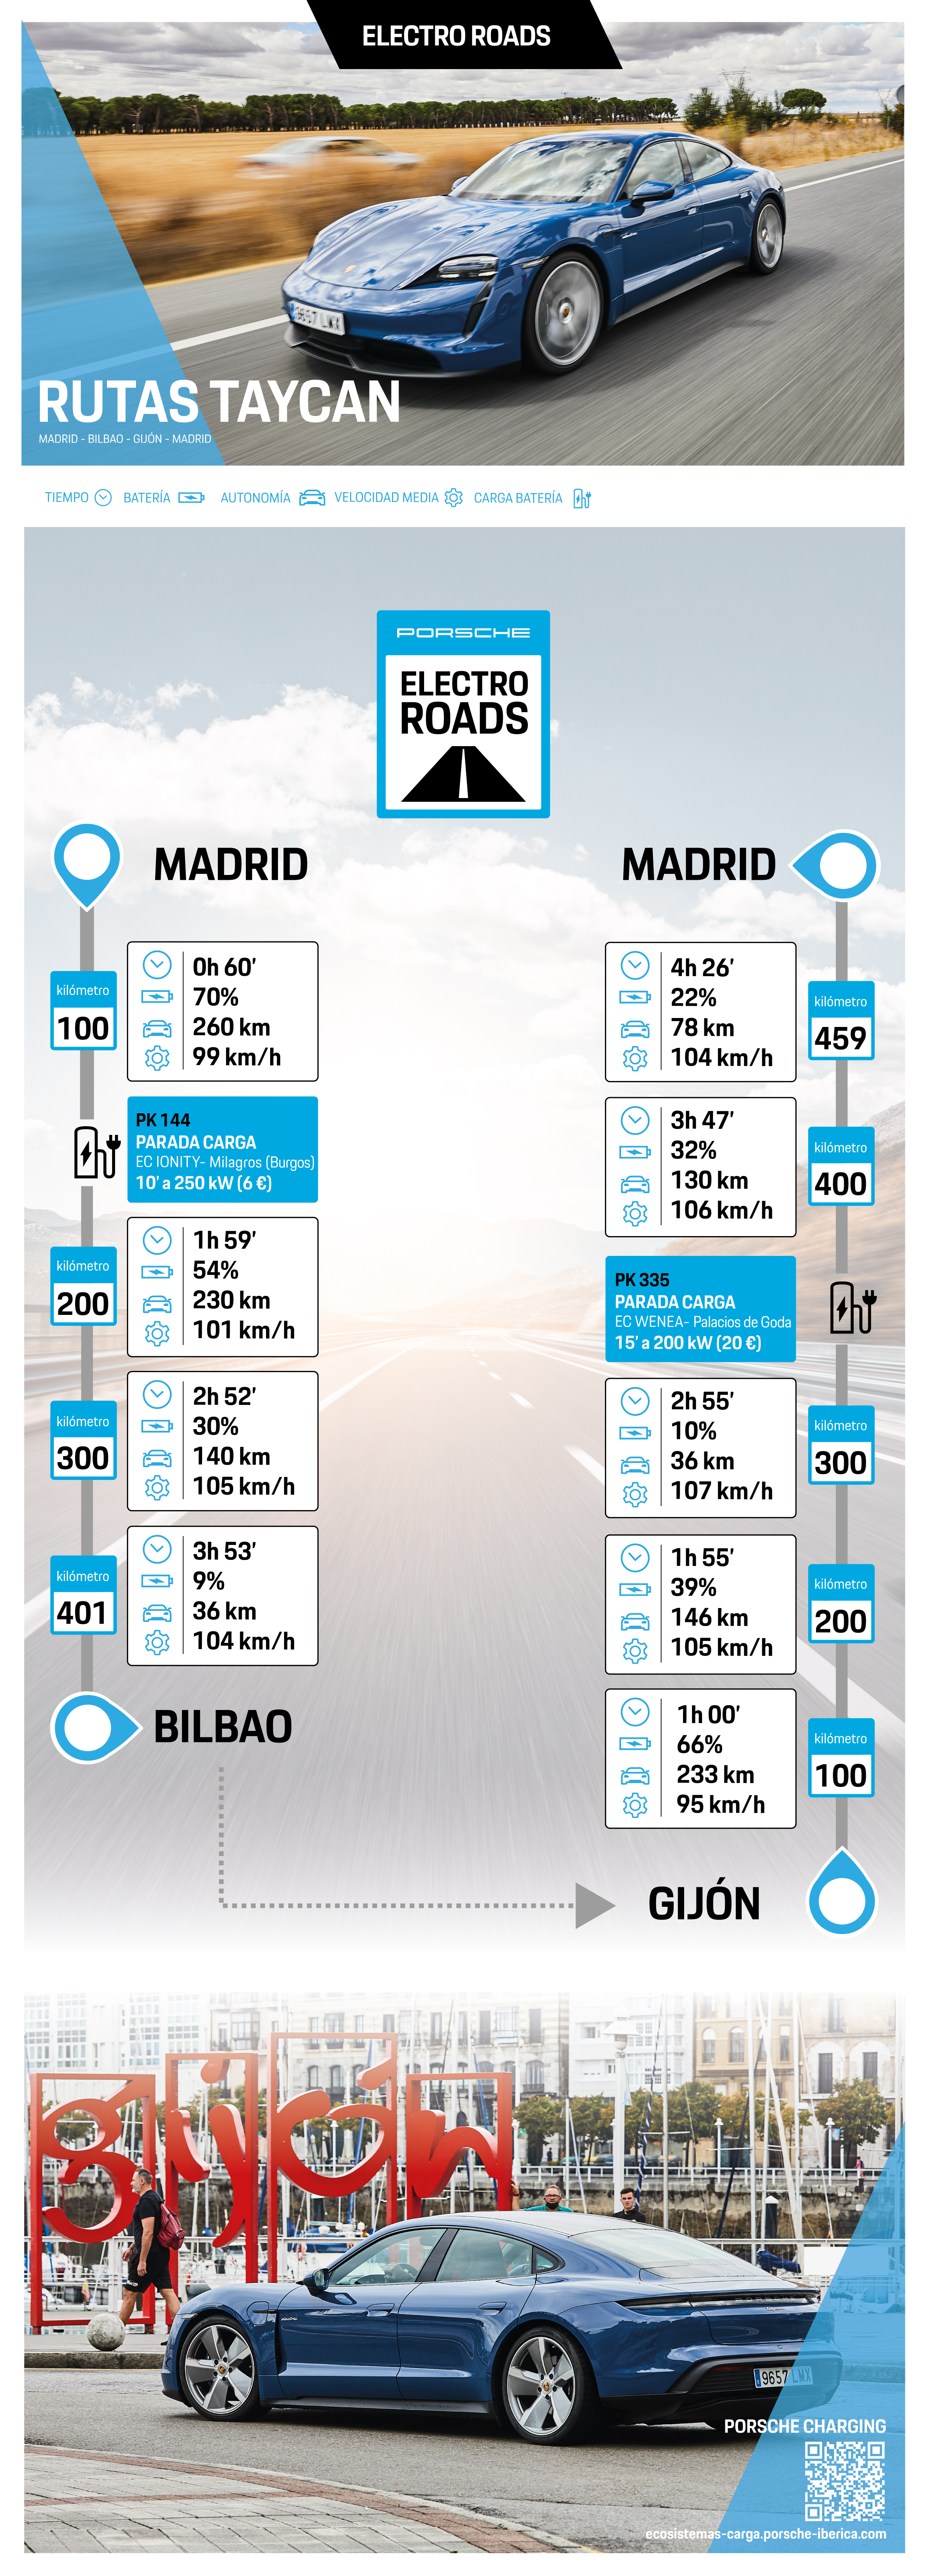 Infografía Rutas Taycan - Cantábrico, paradas de carga, 2021, Porsche Ibérica